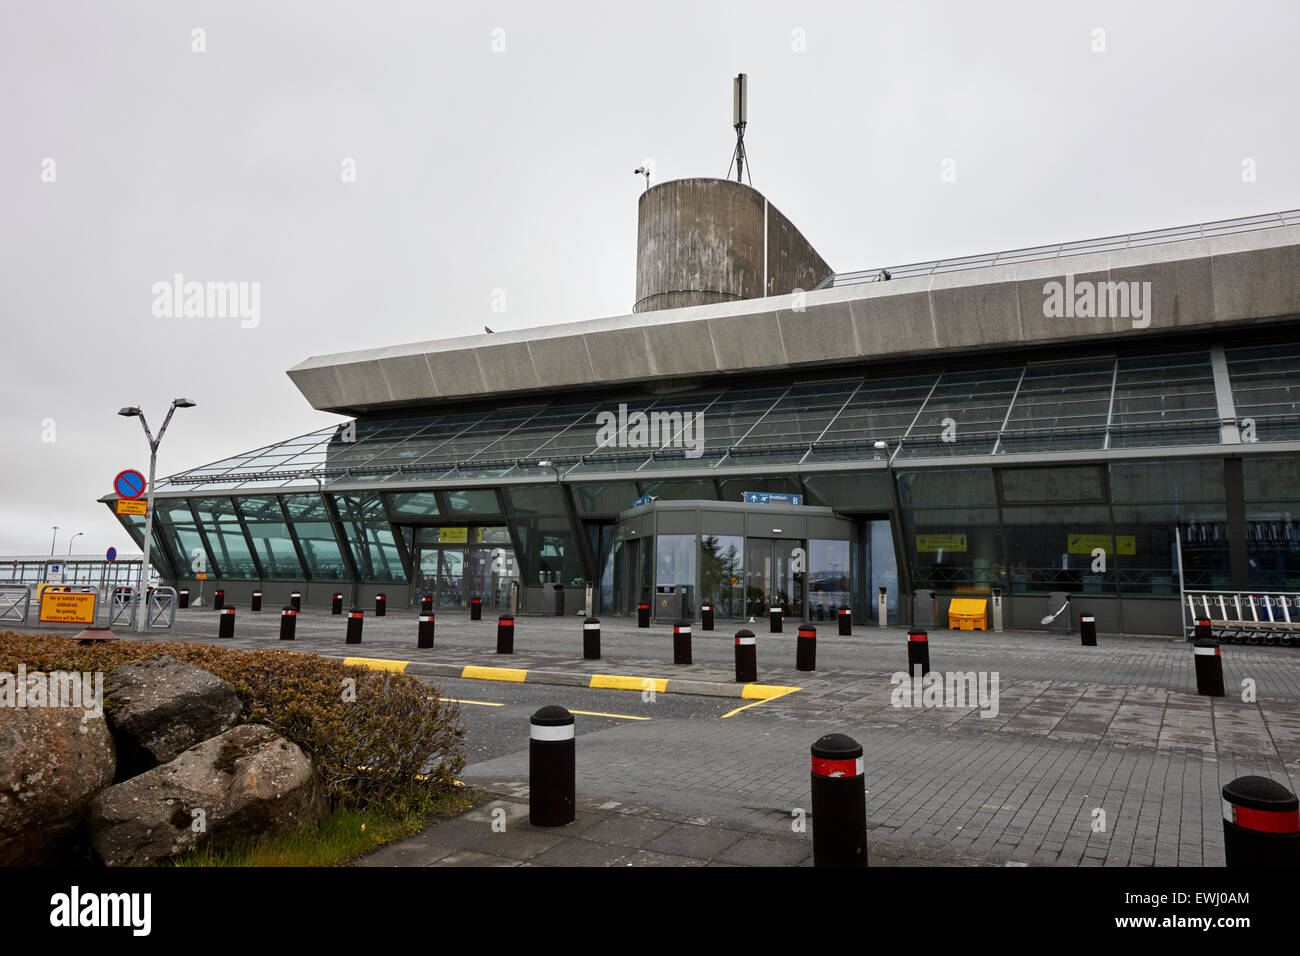 Terminal de l'aéroport de Keflavik Islande d'extérieur de bâtiment Banque D'Images